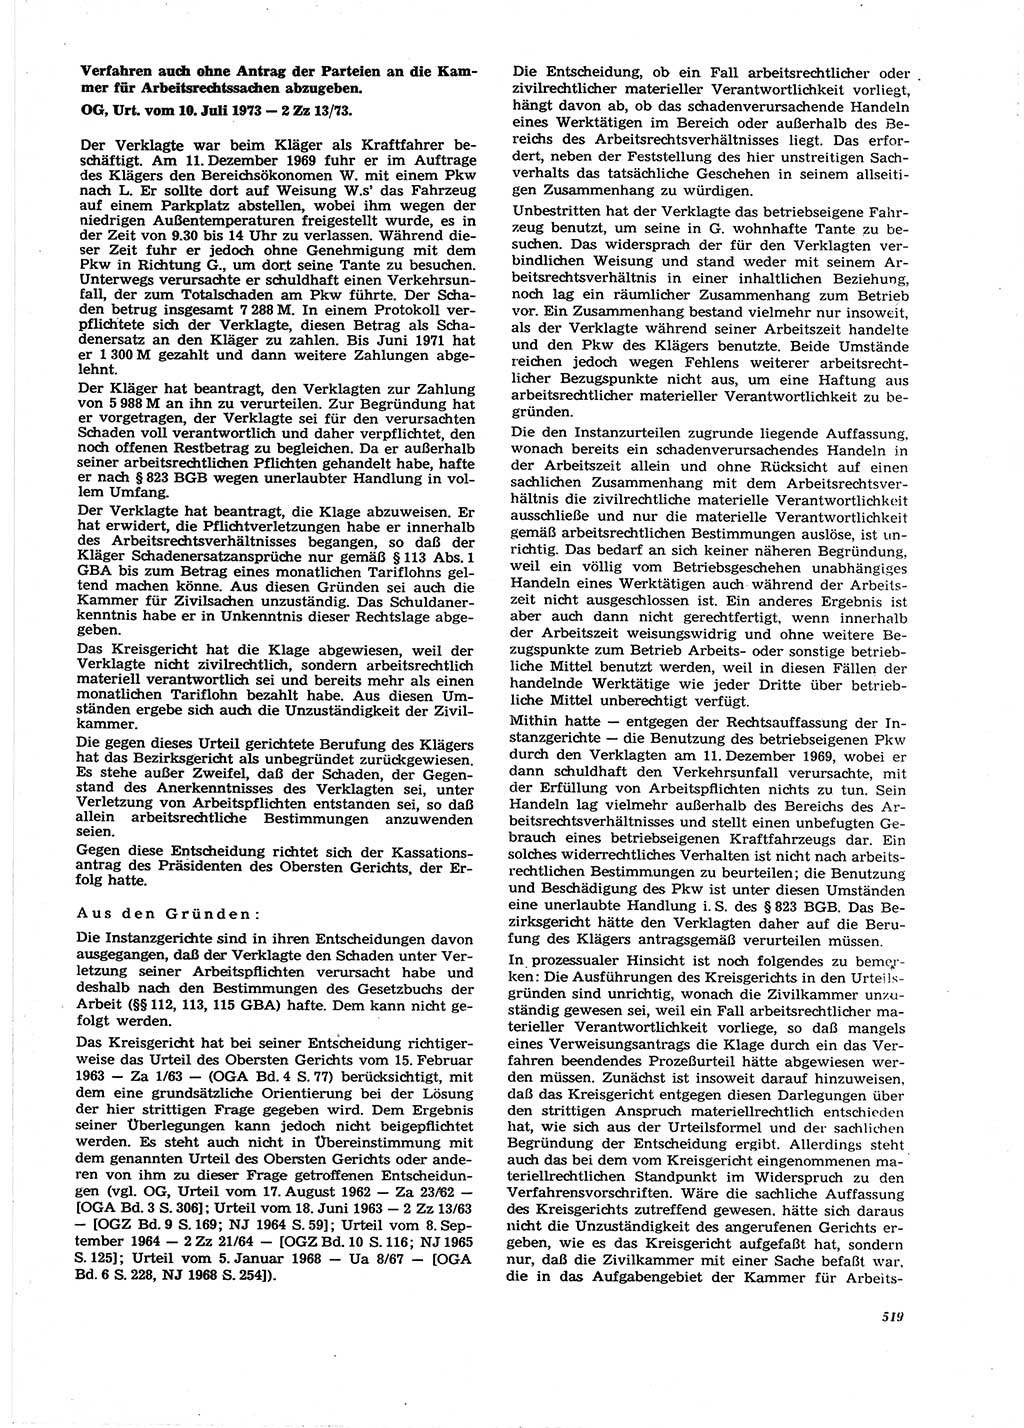 Neue Justiz (NJ), Zeitschrift für Recht und Rechtswissenschaft [Deutsche Demokratische Republik (DDR)], 27. Jahrgang 1973, Seite 519 (NJ DDR 1973, S. 519)